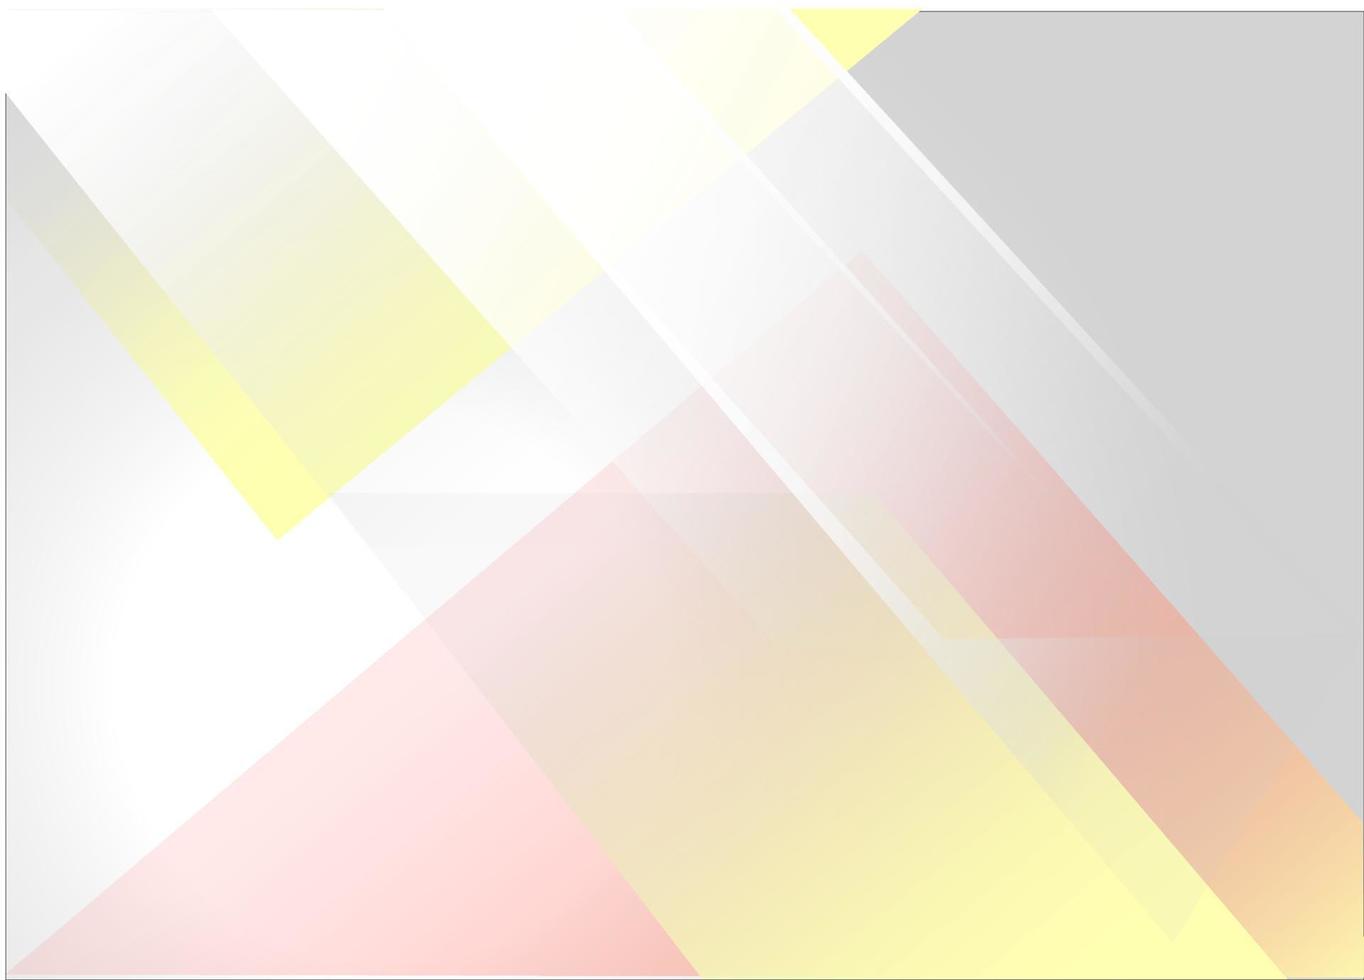 abstrakt fyrkant form av gul, vit och rosa nyanser på en Häftigt grå bakgrund vektor